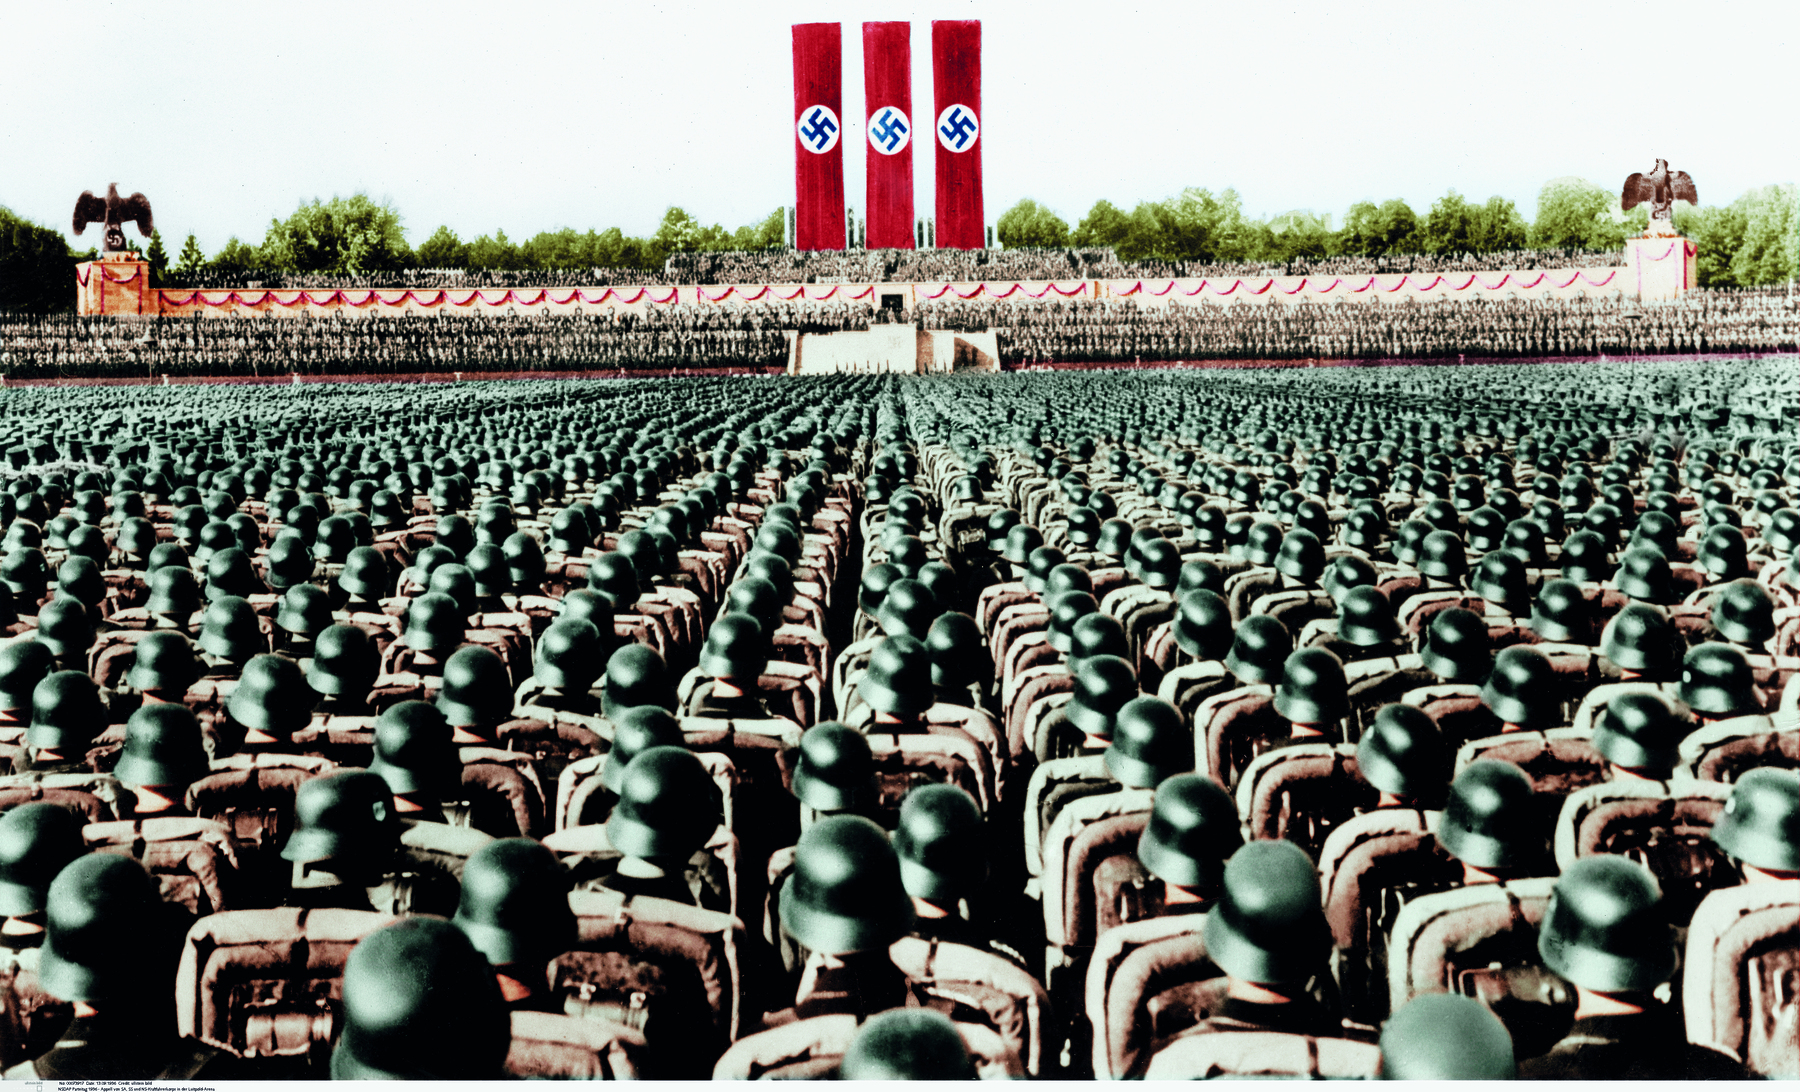 Fotografia. Inúmeras fileiras de soldados, com os corpos voltados em direção a um palanque, centralizado e ao fundo, contendo três faixas verticais idênticas, com fundos vermelhos e o símbolo da suástica.